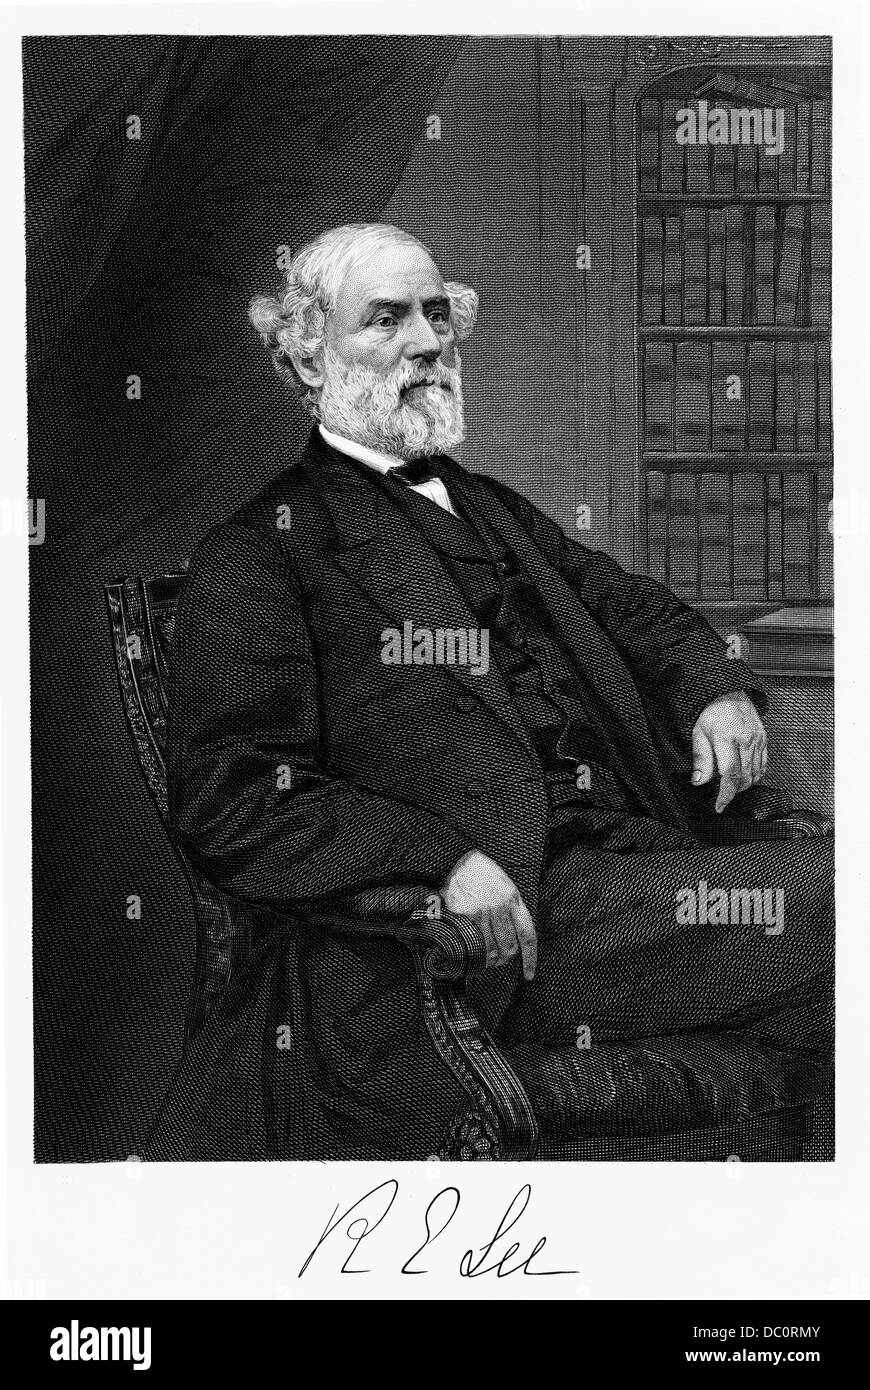 1800s 1860s PORTRAITE DE ROBERT E LEE GÉNÉRAL CONFÉDÉRÉ DURANT LA GUERRE CIVILE AMÉRICAINE Banque D'Images